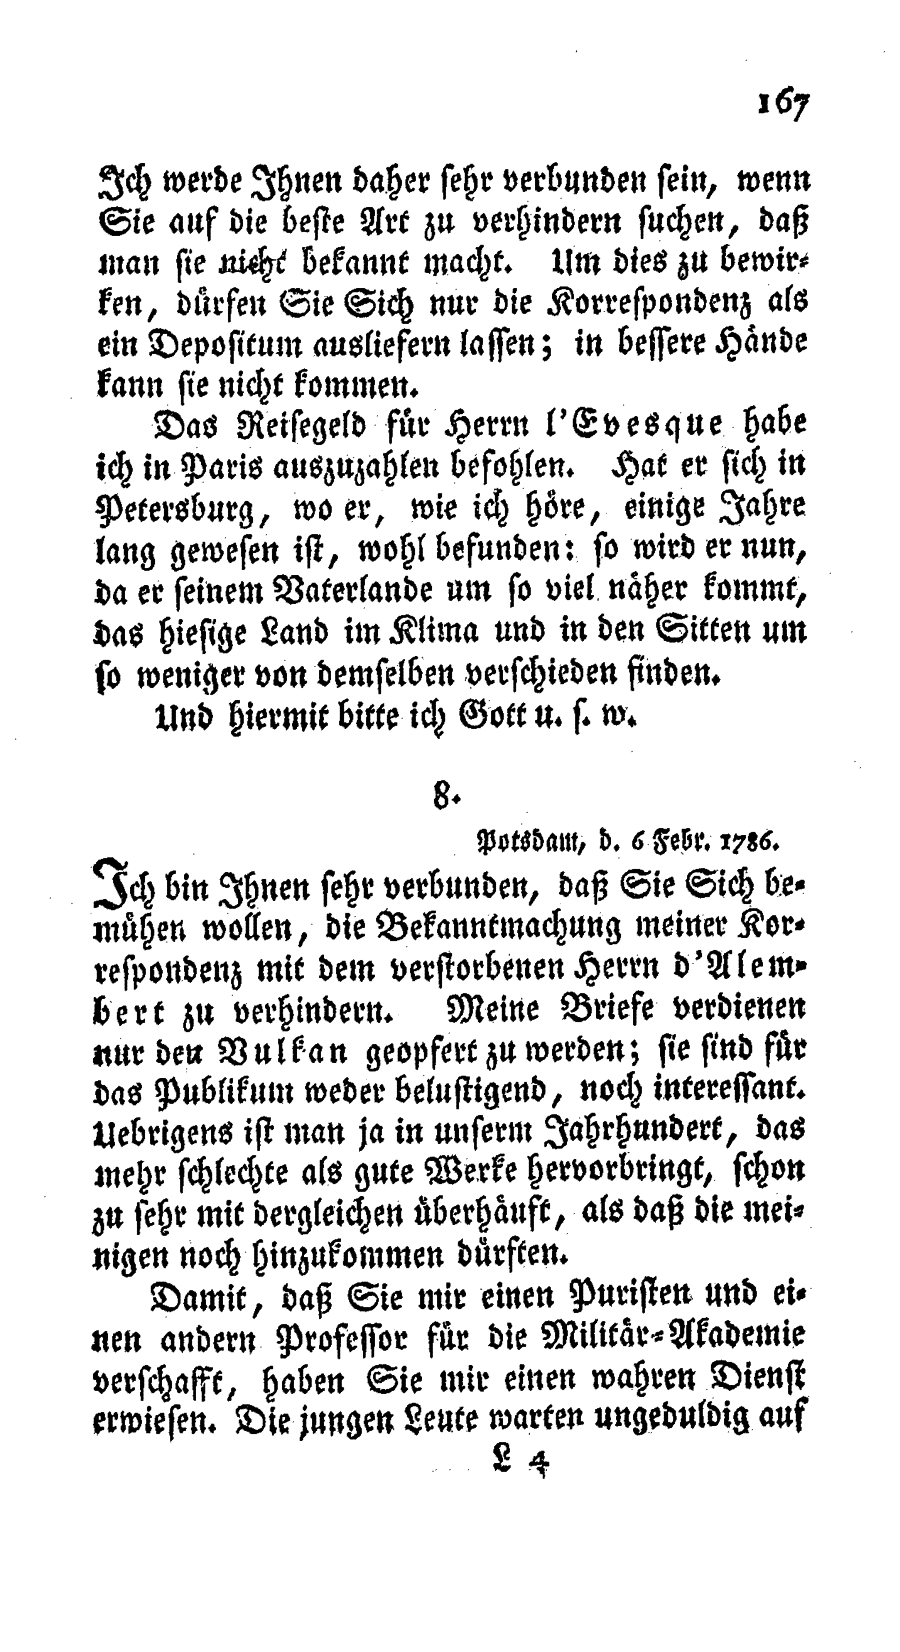 S. 167, Obj. 2